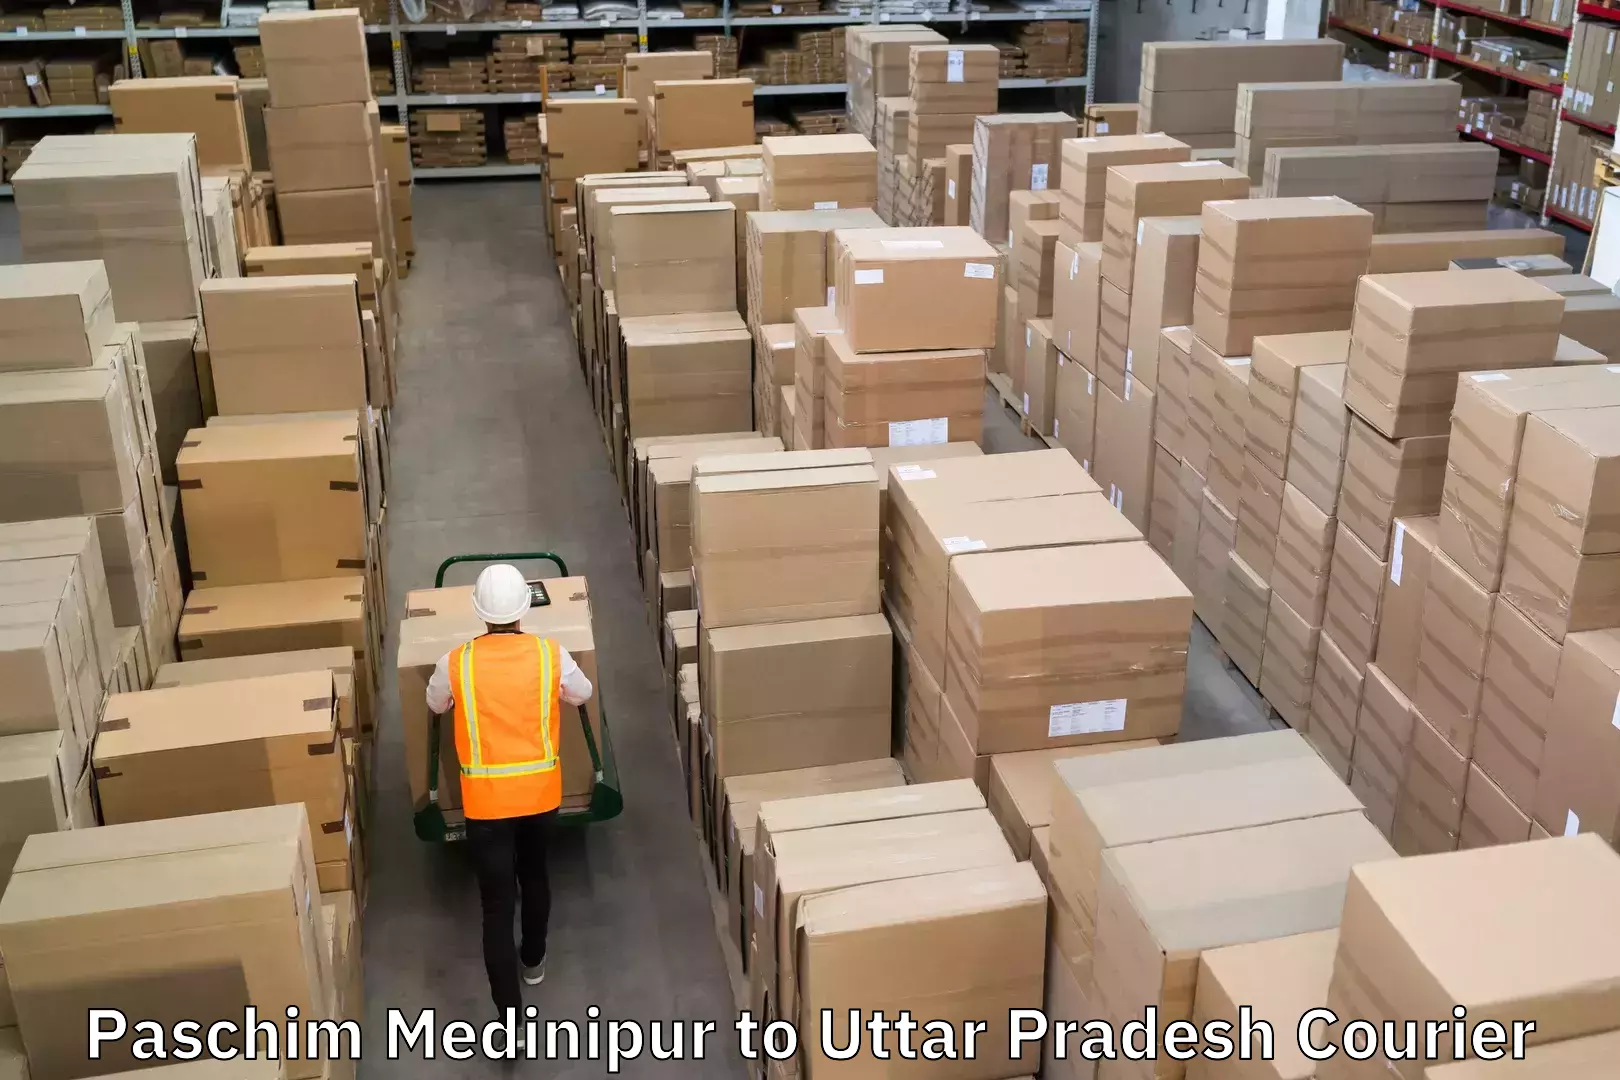 Courier service comparison Paschim Medinipur to Uttar Pradesh